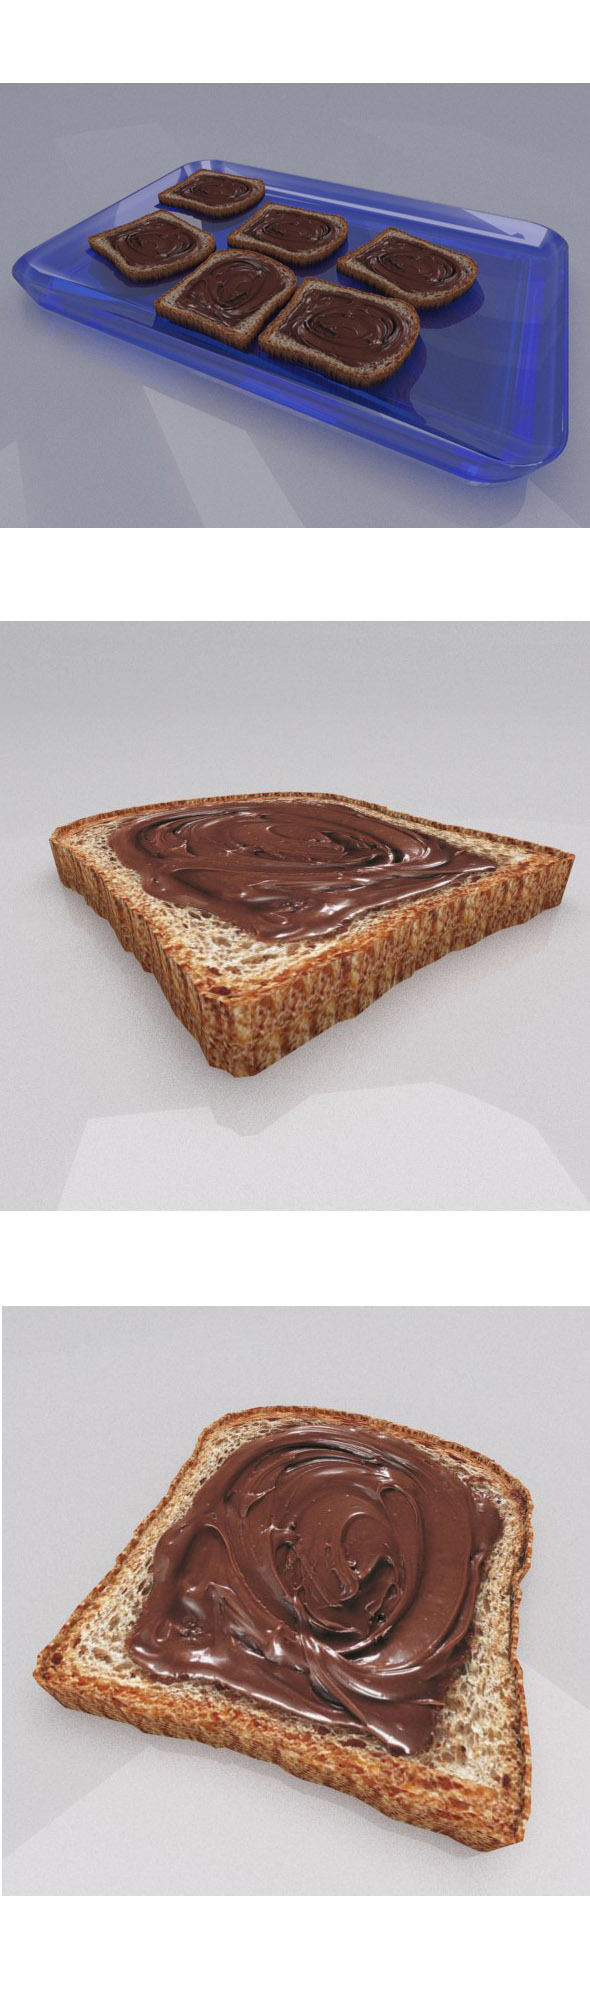 ToastChocolate - 3Docean 13731937